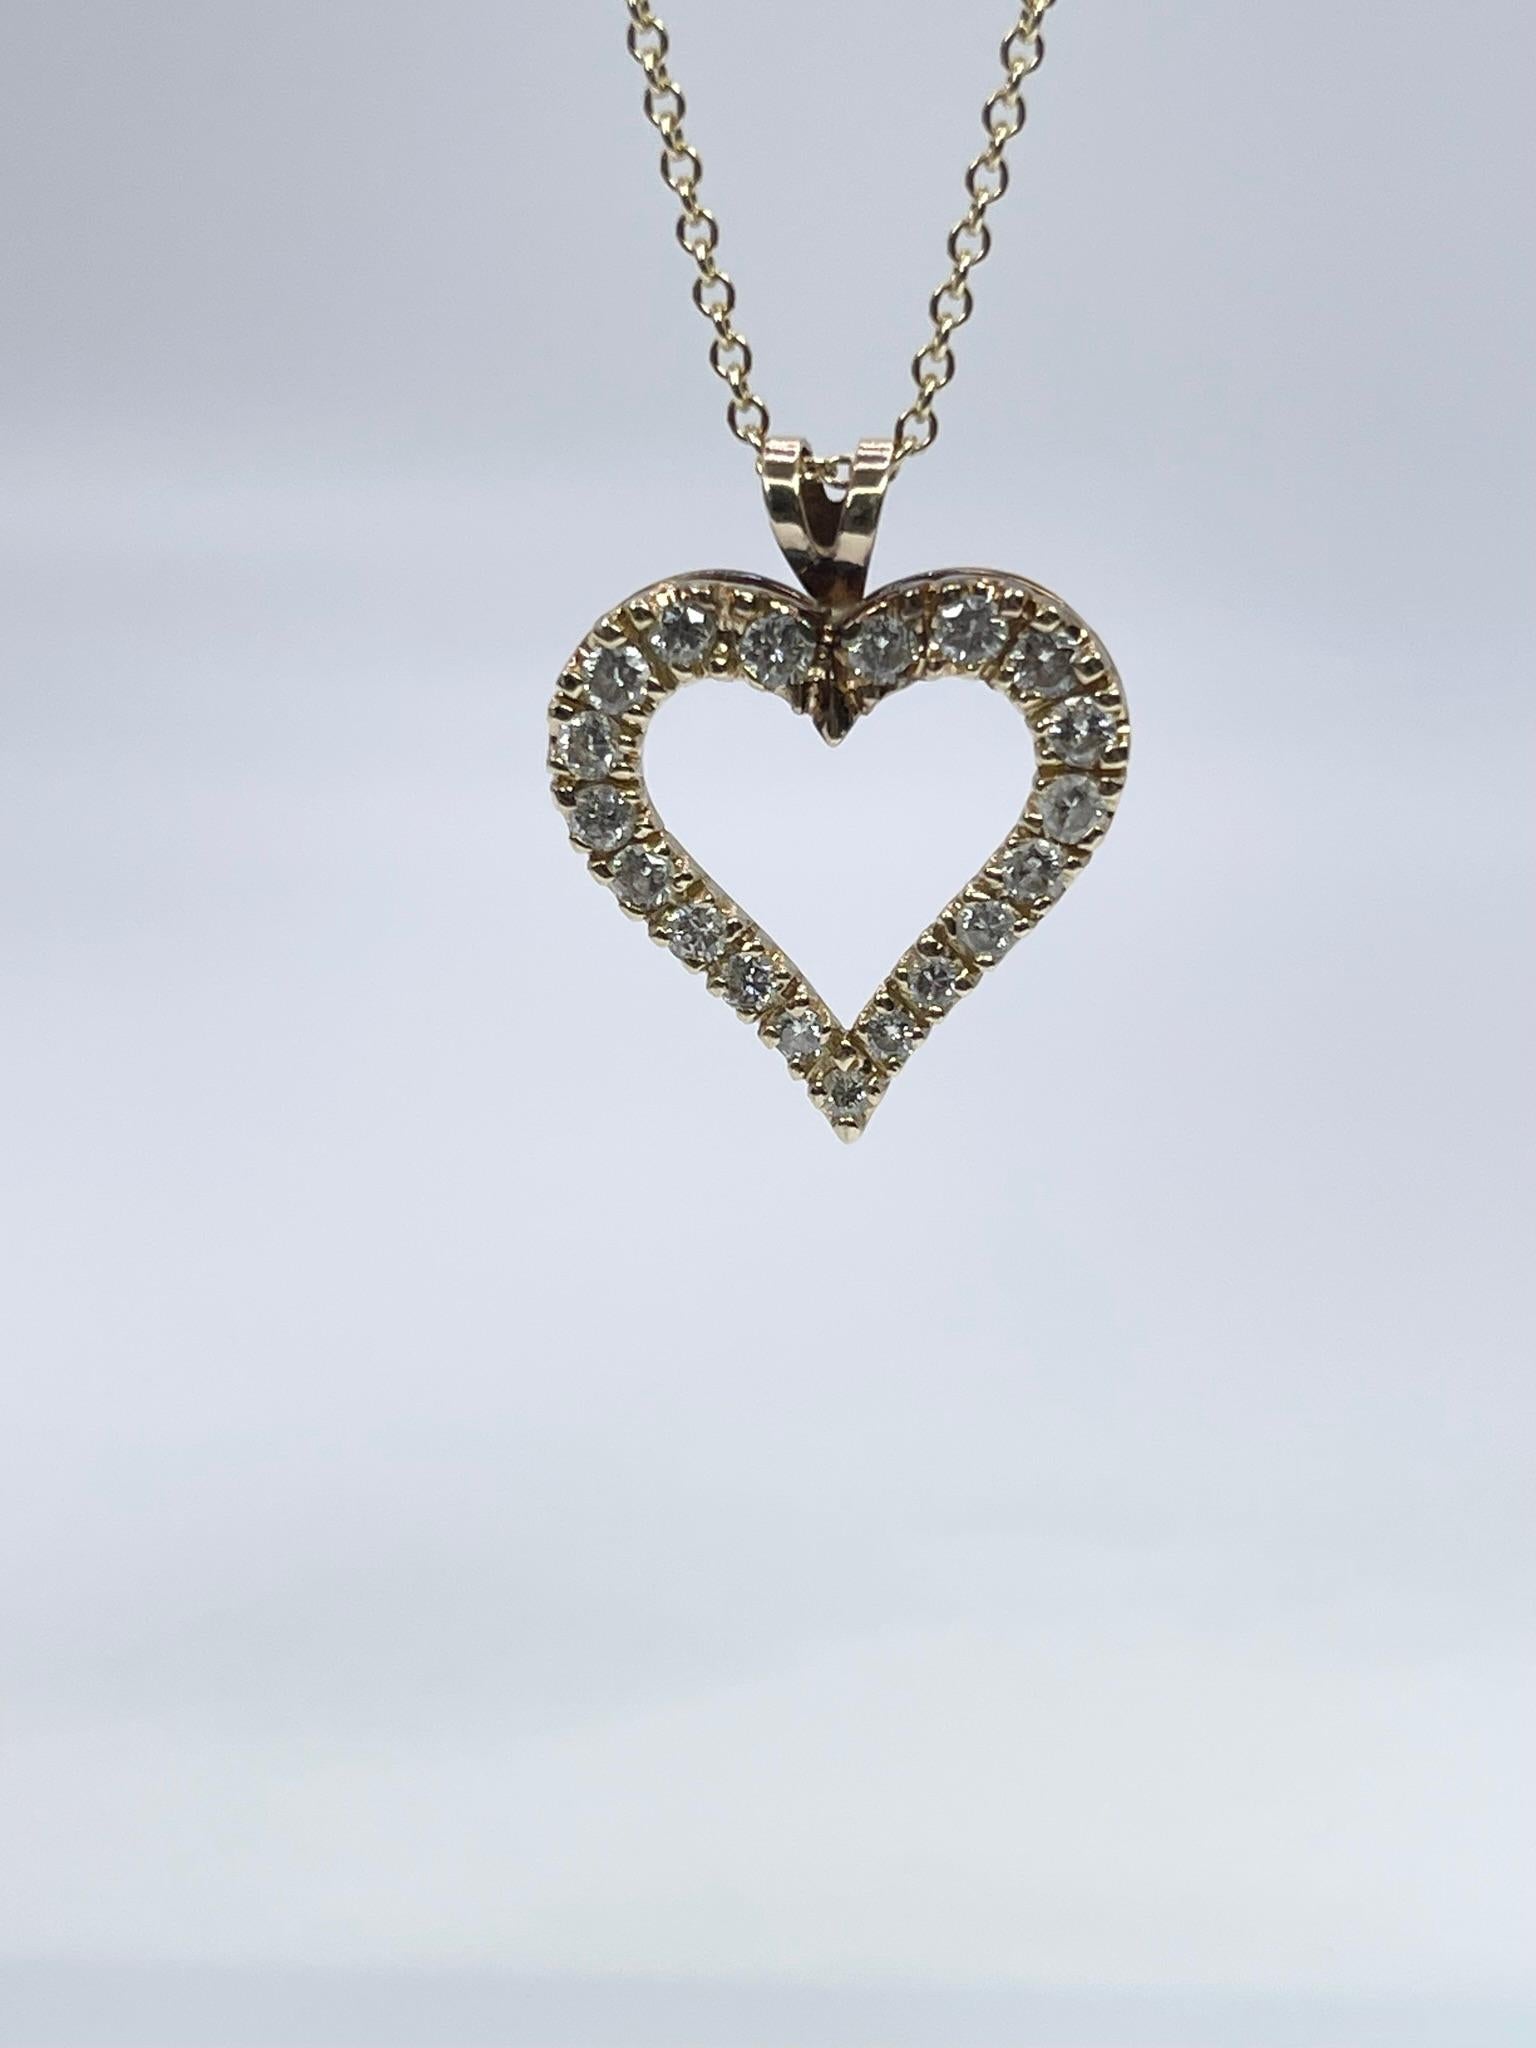 Grand collier pendentif en forme de cœur réalisé avec des diamants naturels en or 14KT.

POIDS EN GRAMME : 3.10gr
OR : or blanc 14KT
TAILLE : 0.84